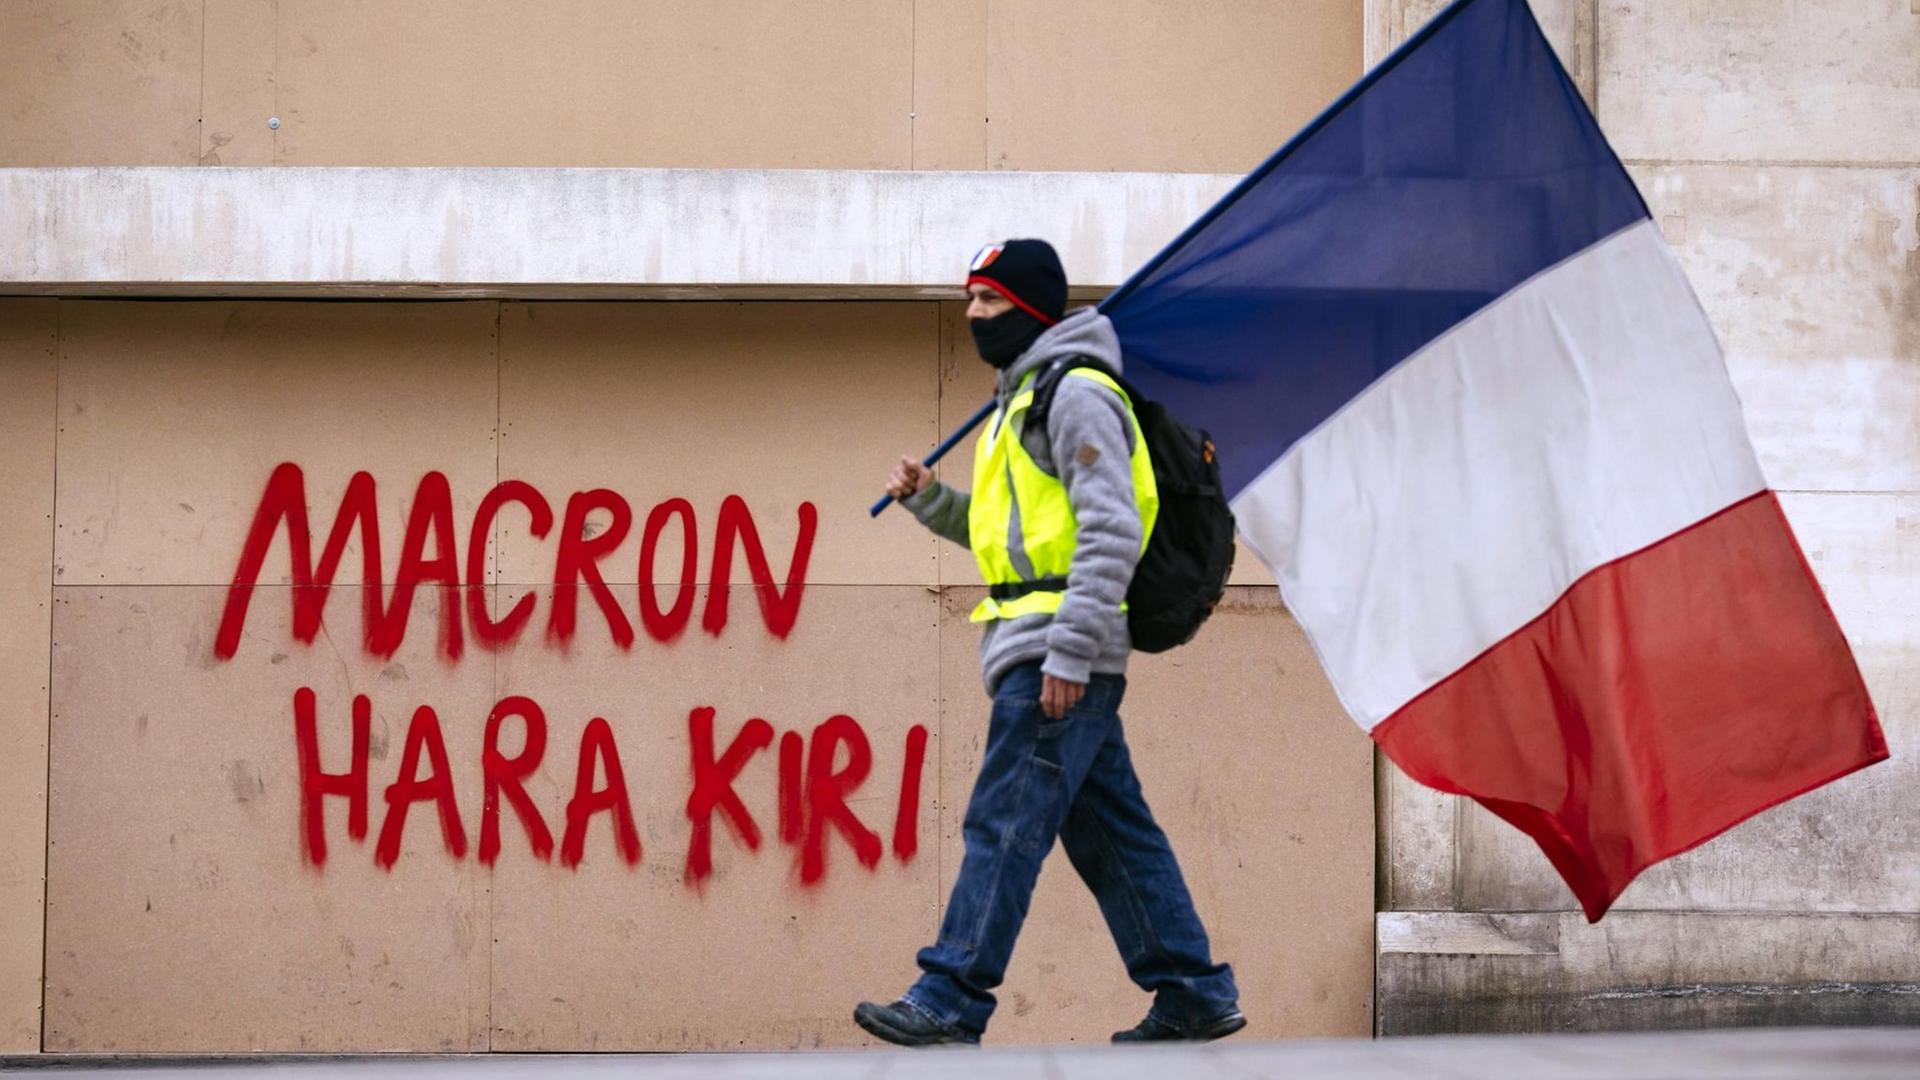 Ein Demonstrant der Gelb-Westen-Bewegung mit der französischen Fahne vor einer Mauer. Impression von den Gelbwesten-Protesten gegen Präsident Macron auf den Champs Elysées.